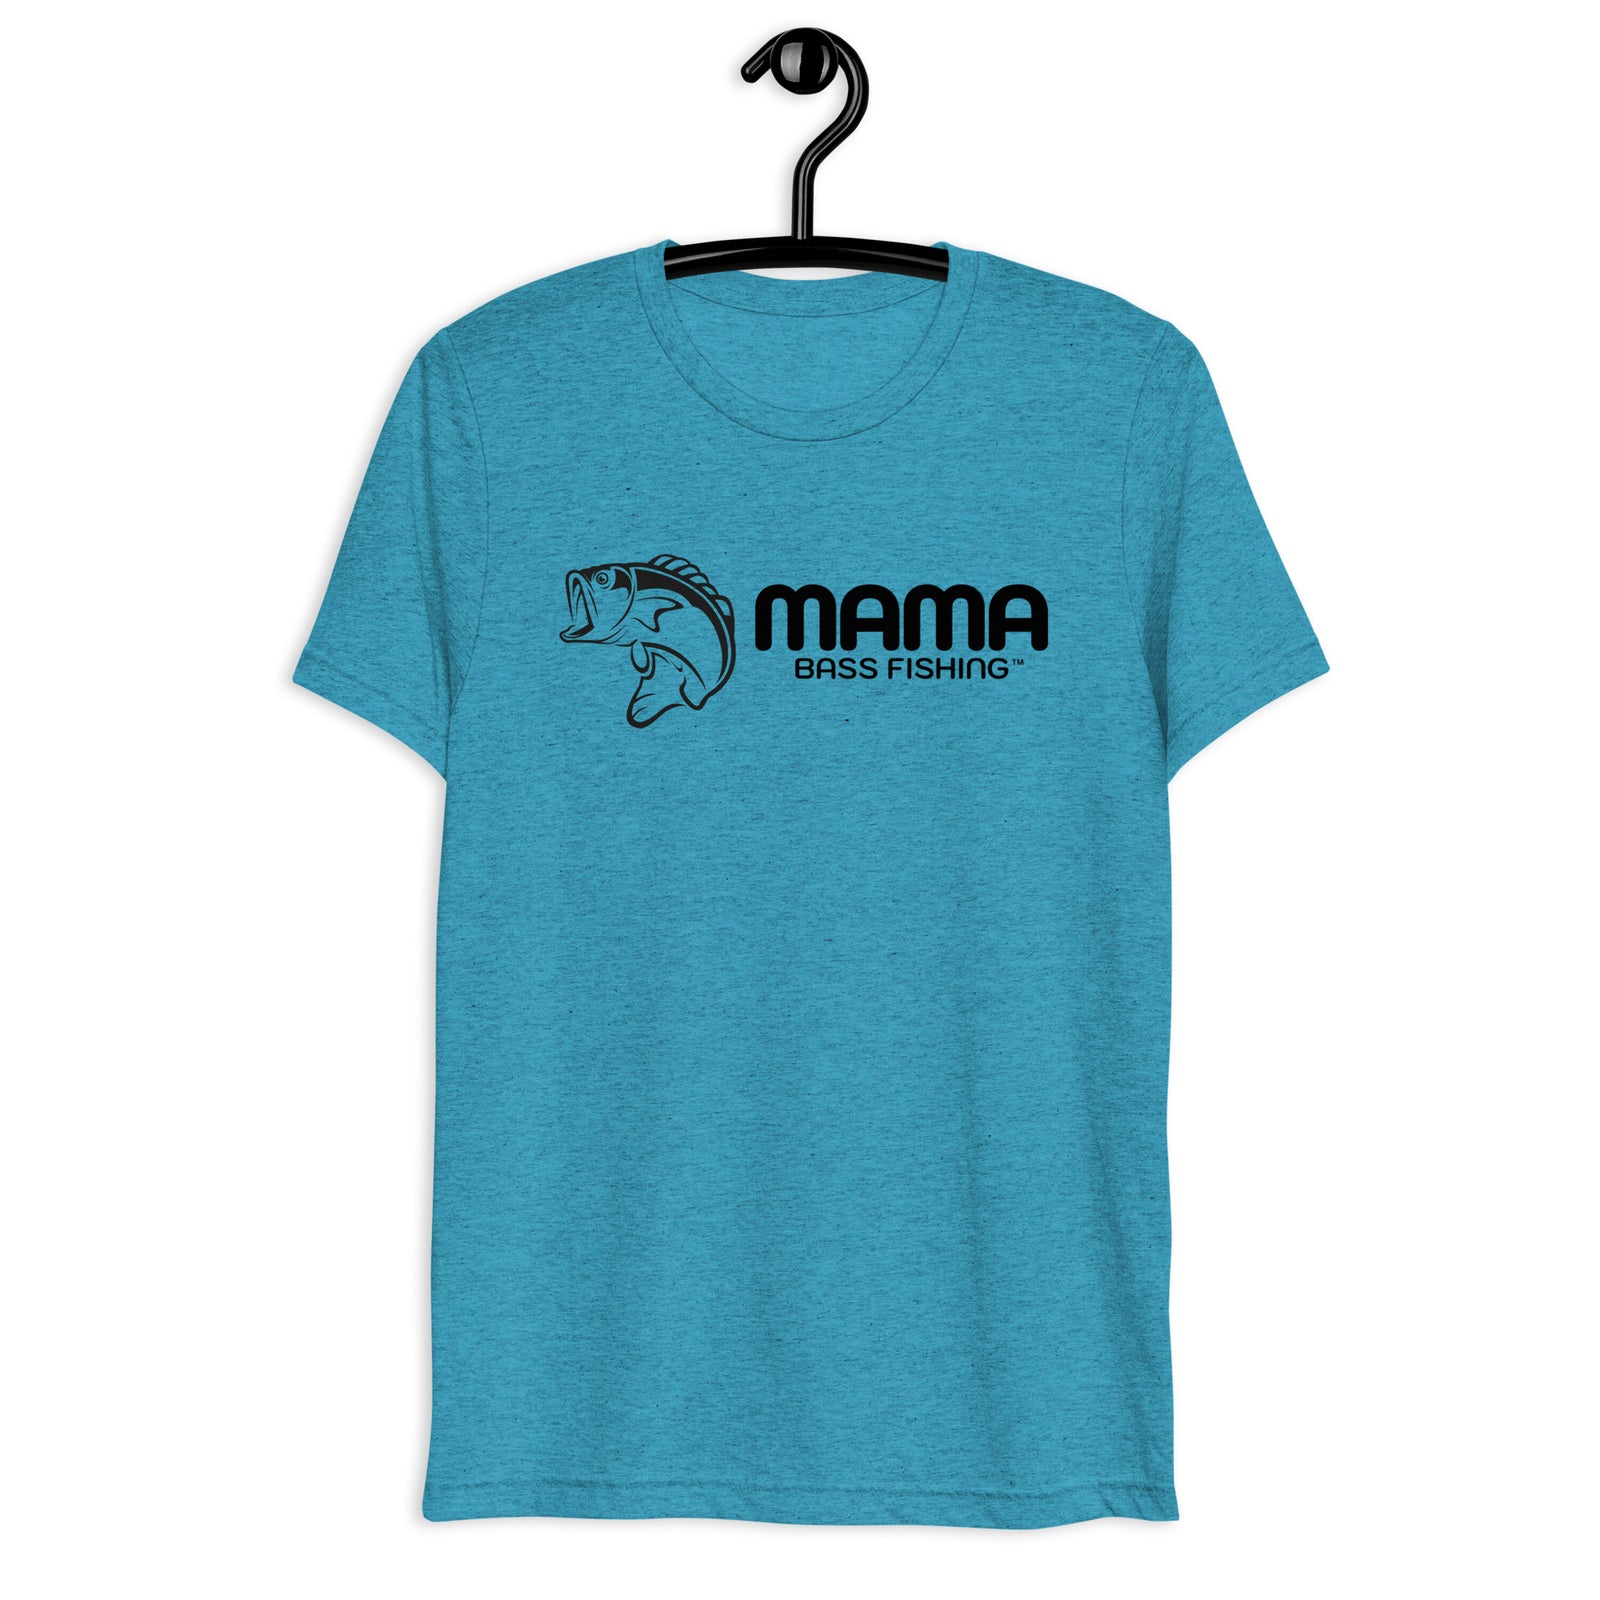 Bass Fishing Shirts - Mama Bass Fishing